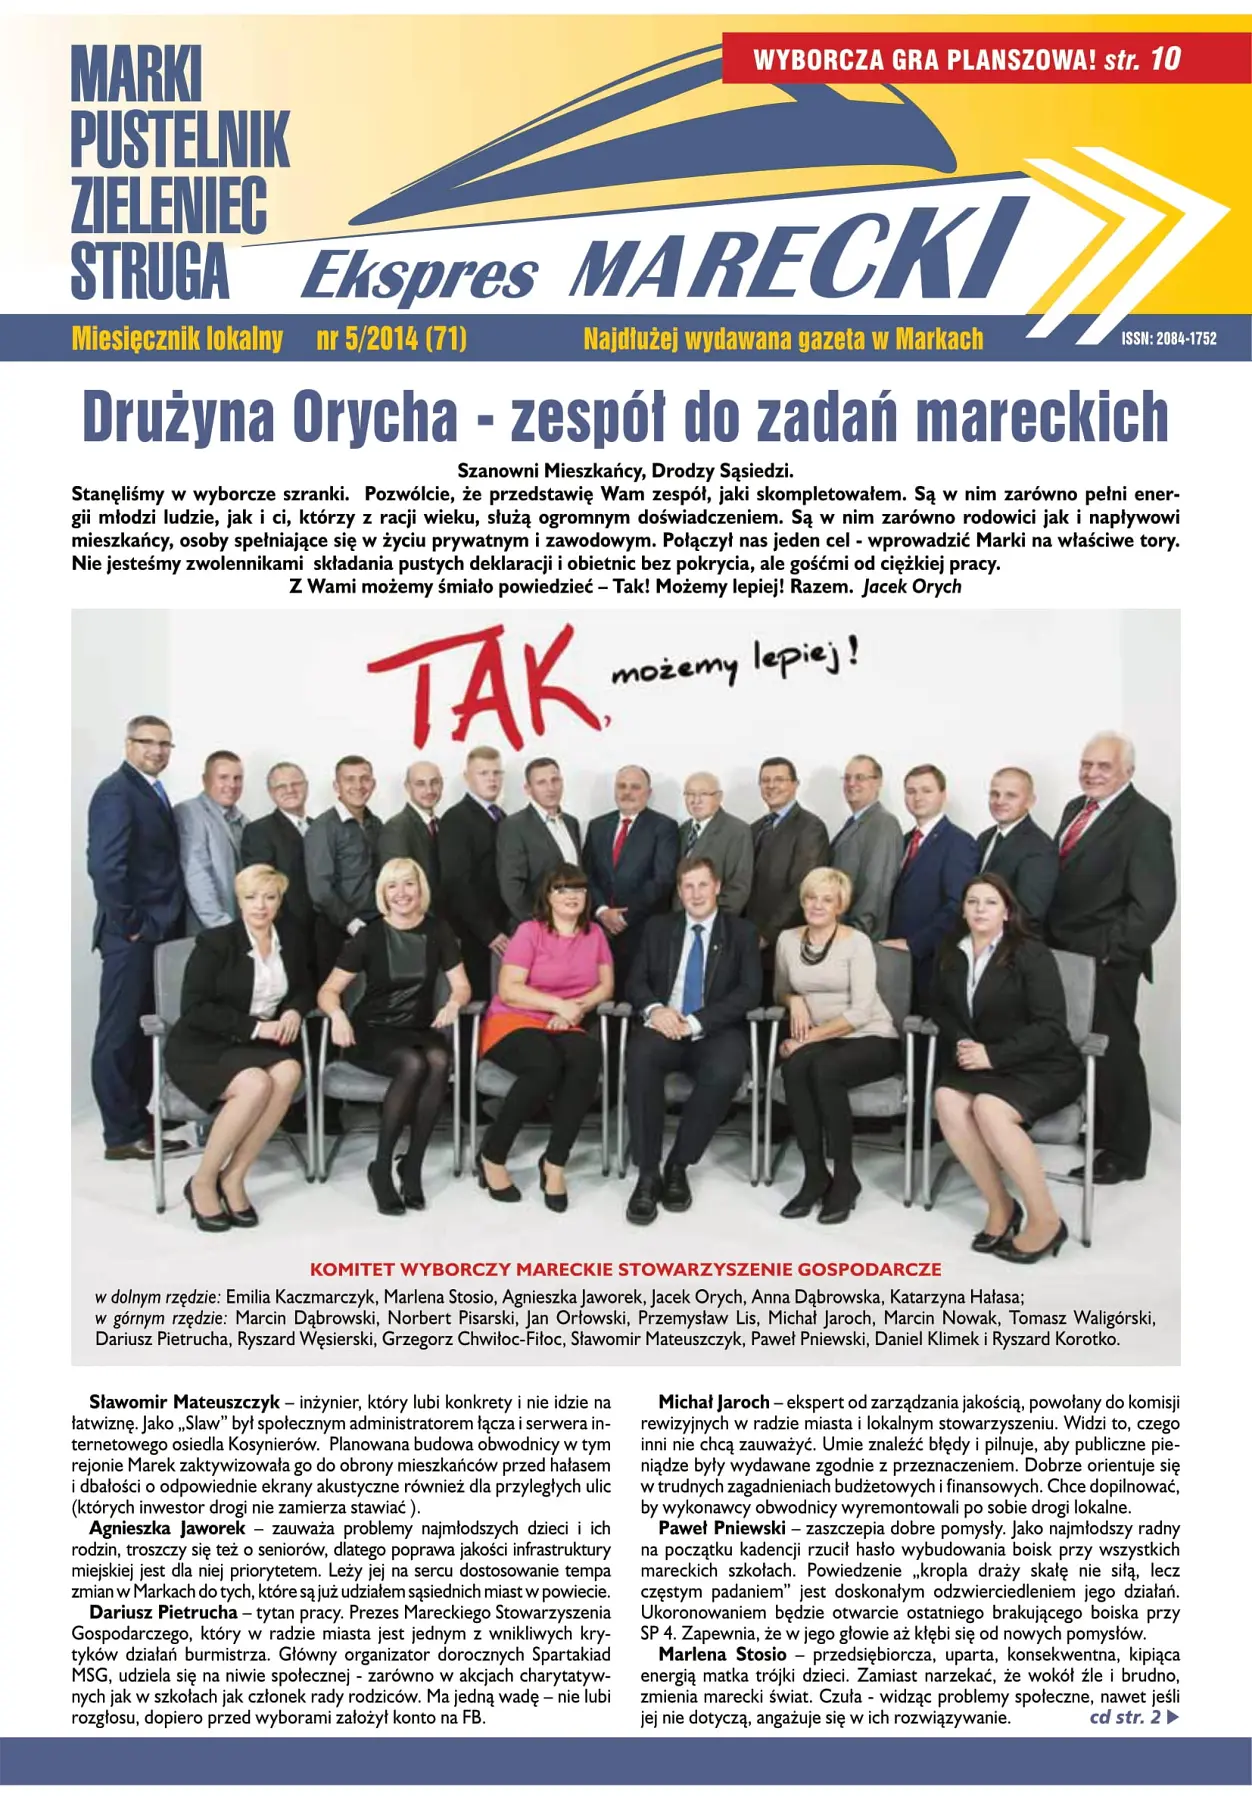 Ekspres Marecki 5/2014 (71)